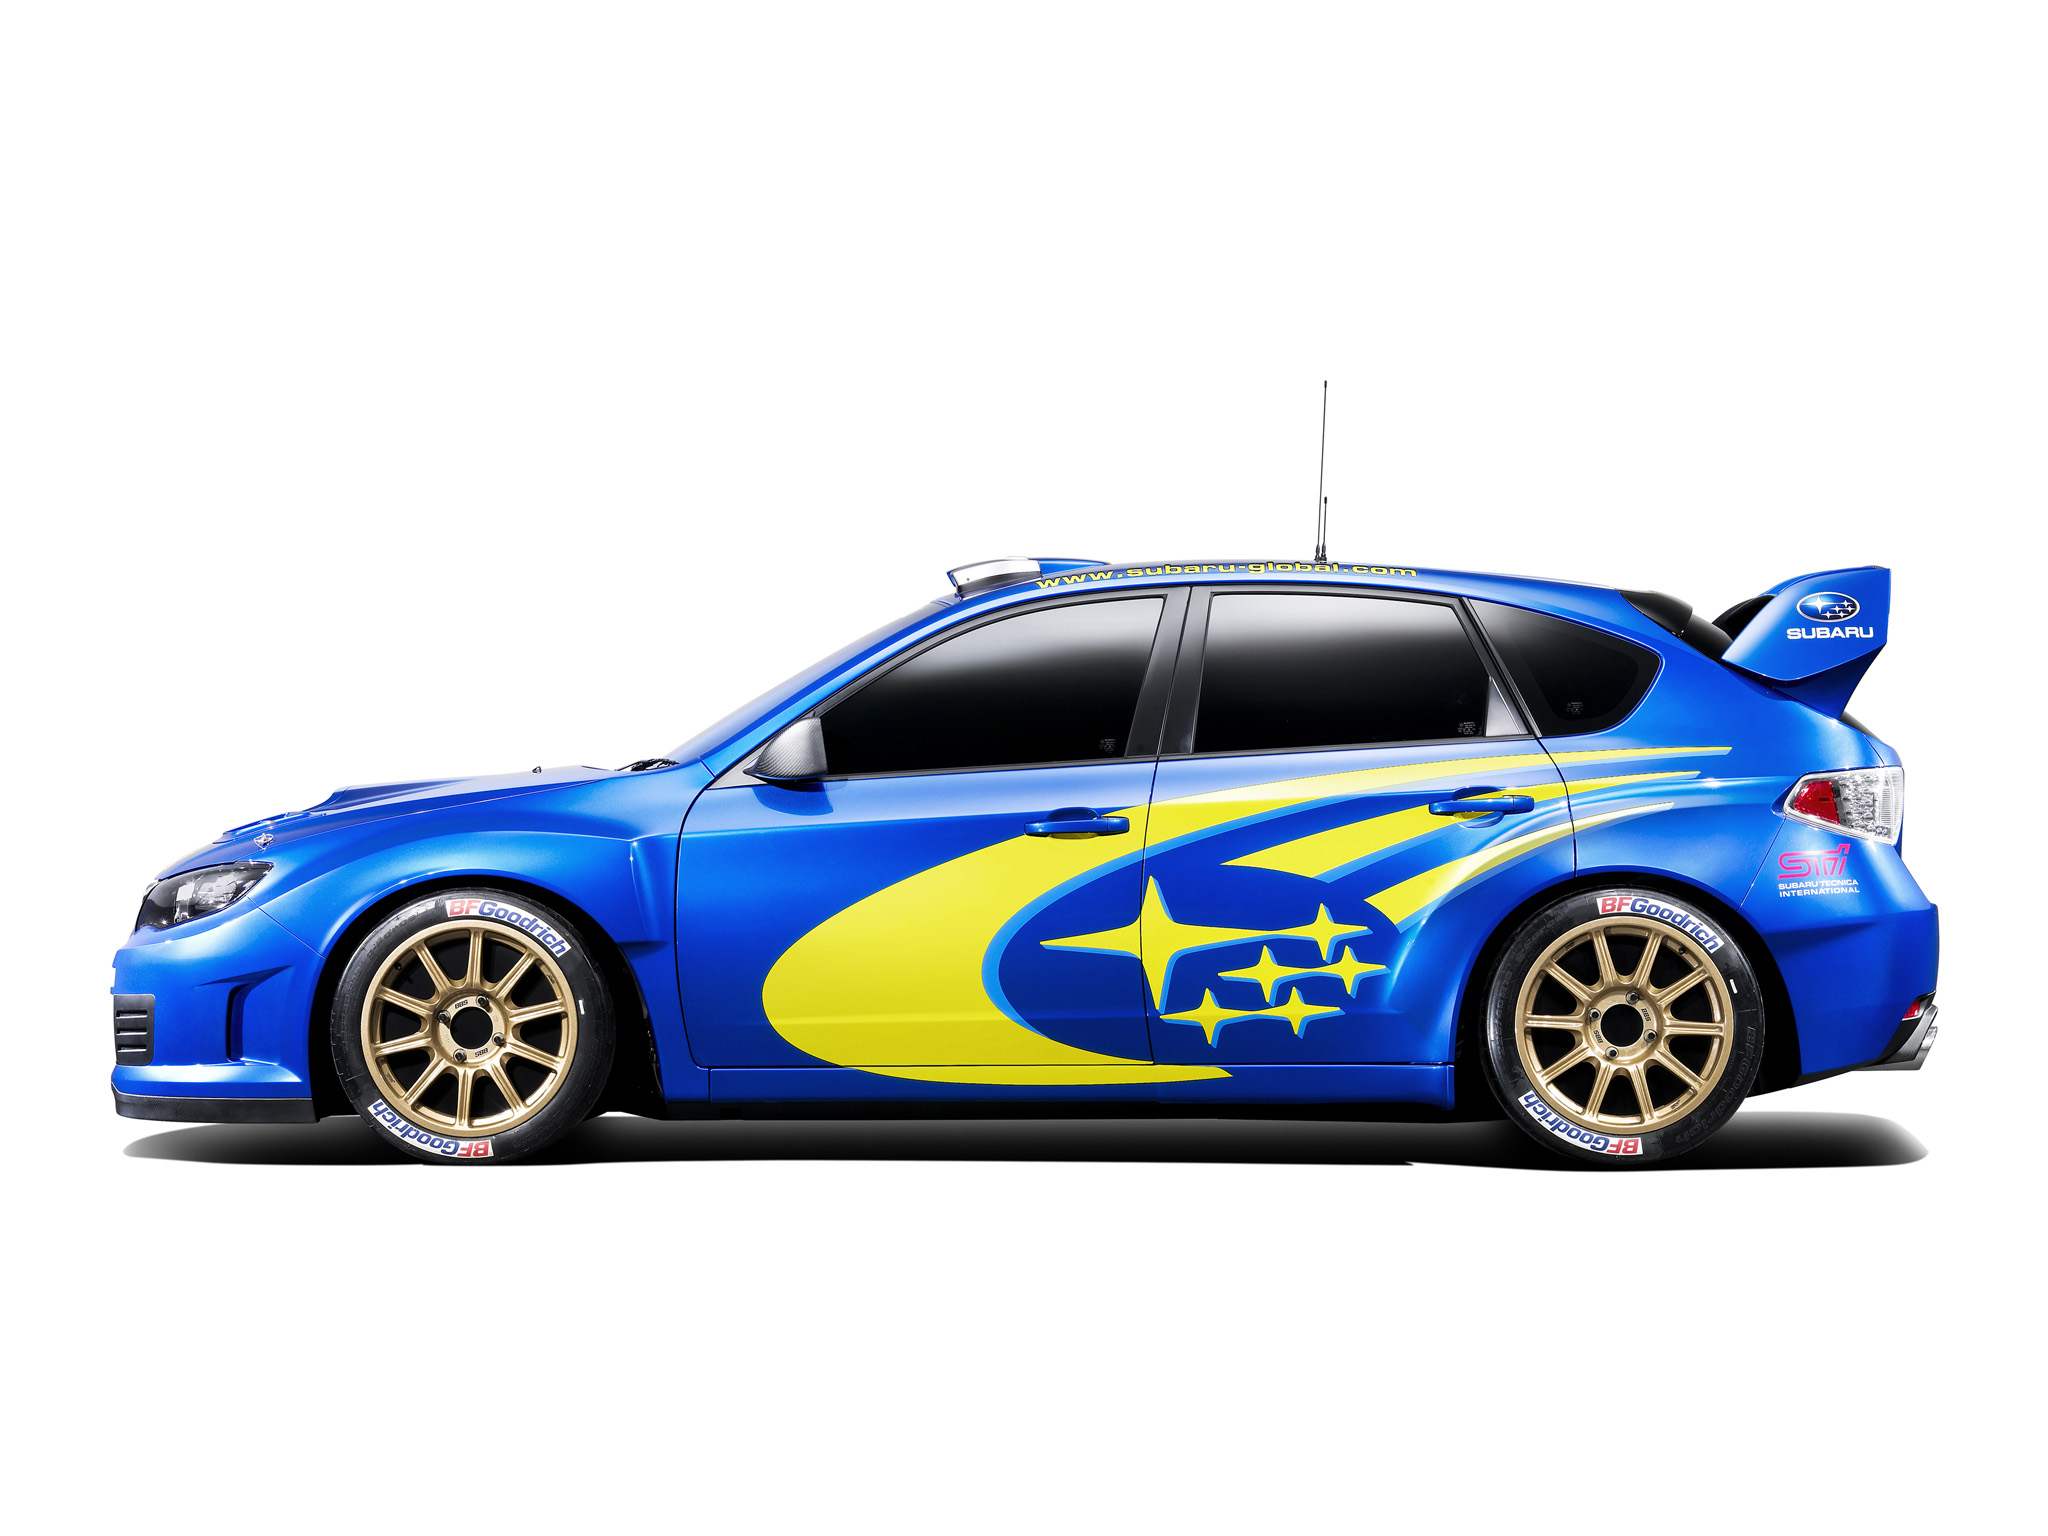 Free download wallpaper Wrc Racing, Racing, Vehicles on your PC desktop